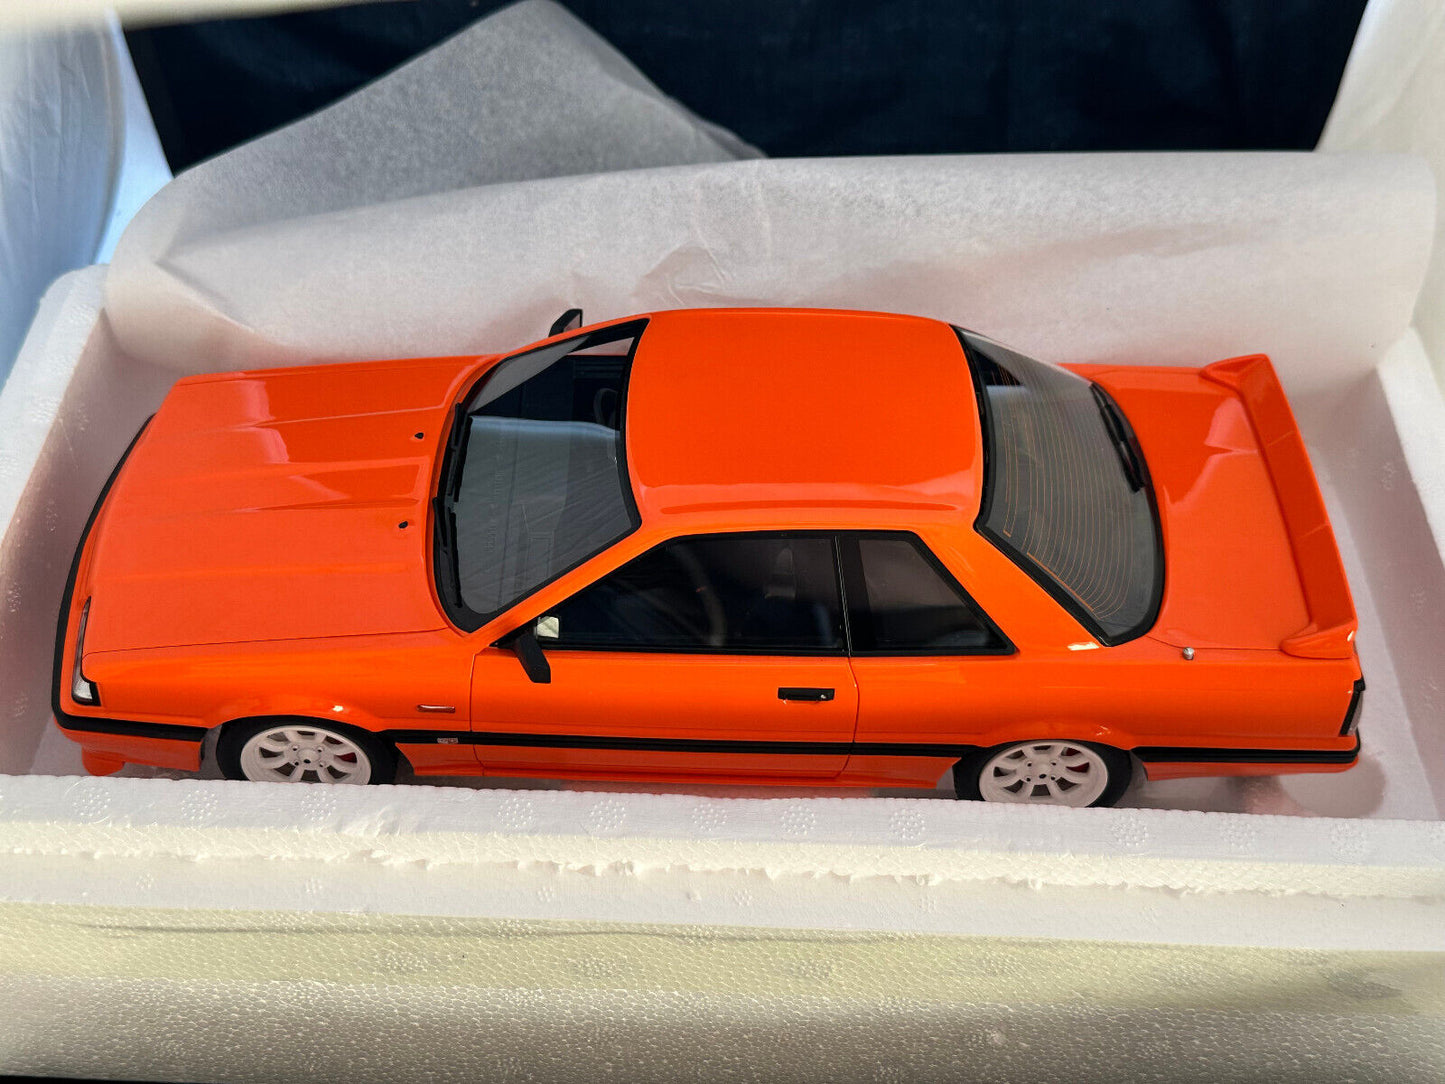 DDA 1/18 Hr-31 Nissan Skyline R31  Gts-R Orange Limited Edition Resin Model